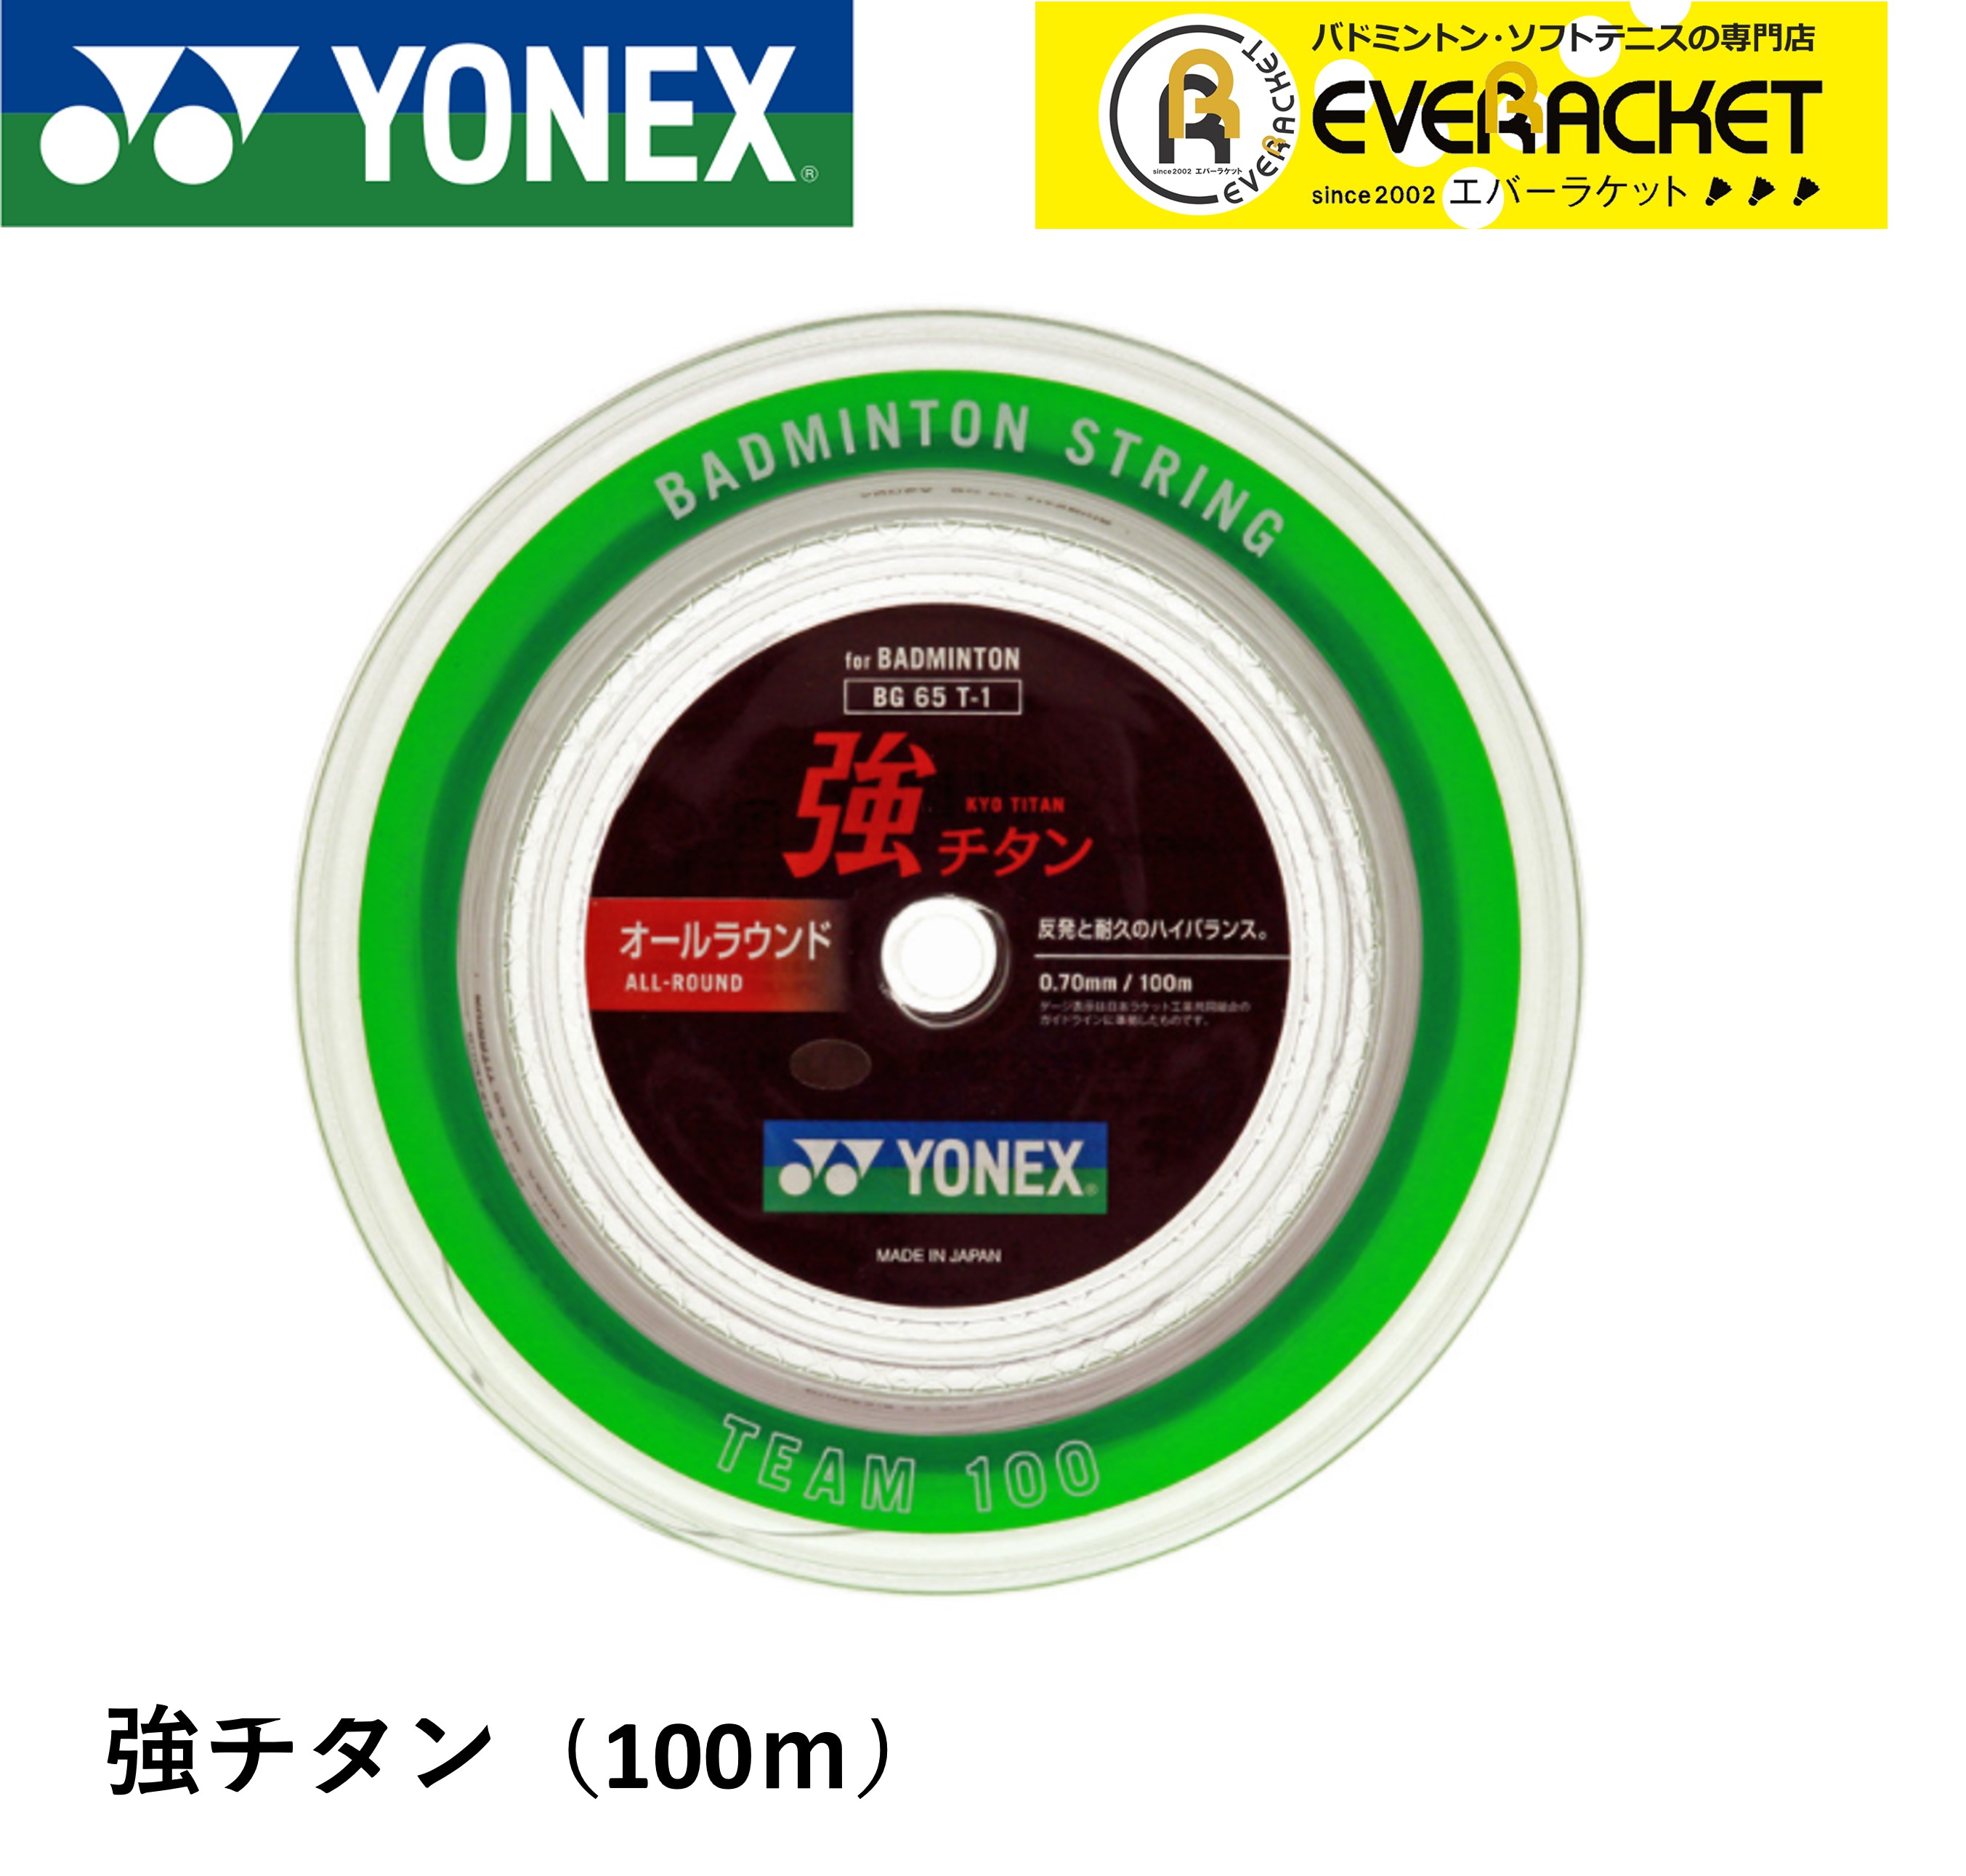 【最短出荷】ヨネックス YONEX バドミントンストリング キョウチタン(100M) 強チタン BG65T-1 バドミントン